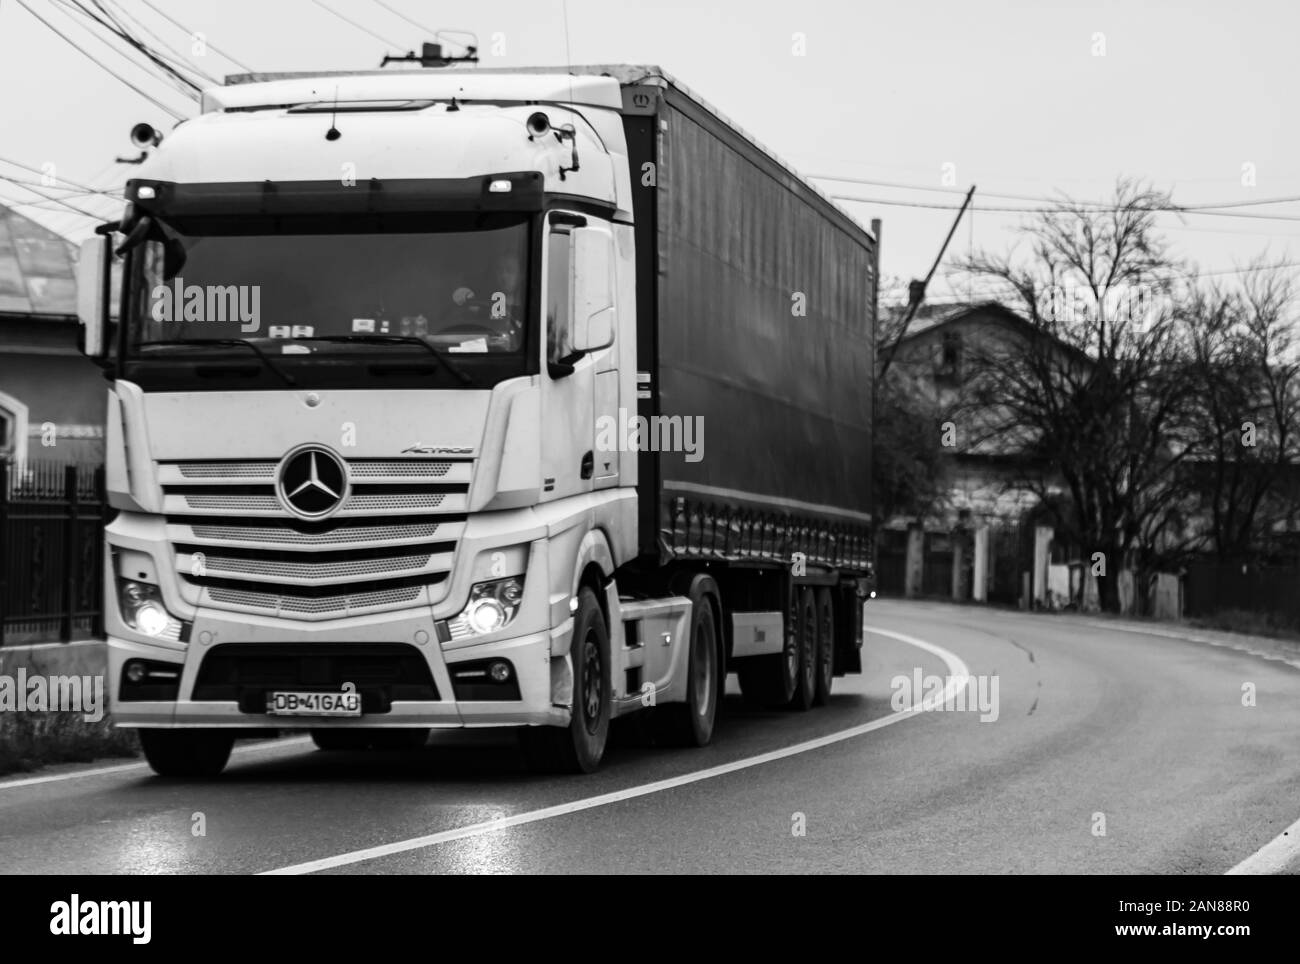 Mercedes Benz Actros camion rimorchio nel traffico su strada asfaltata. Foto in bianco e nero con la Mercedes del carrello . Sibiu, Romania, 2020. Foto Stock